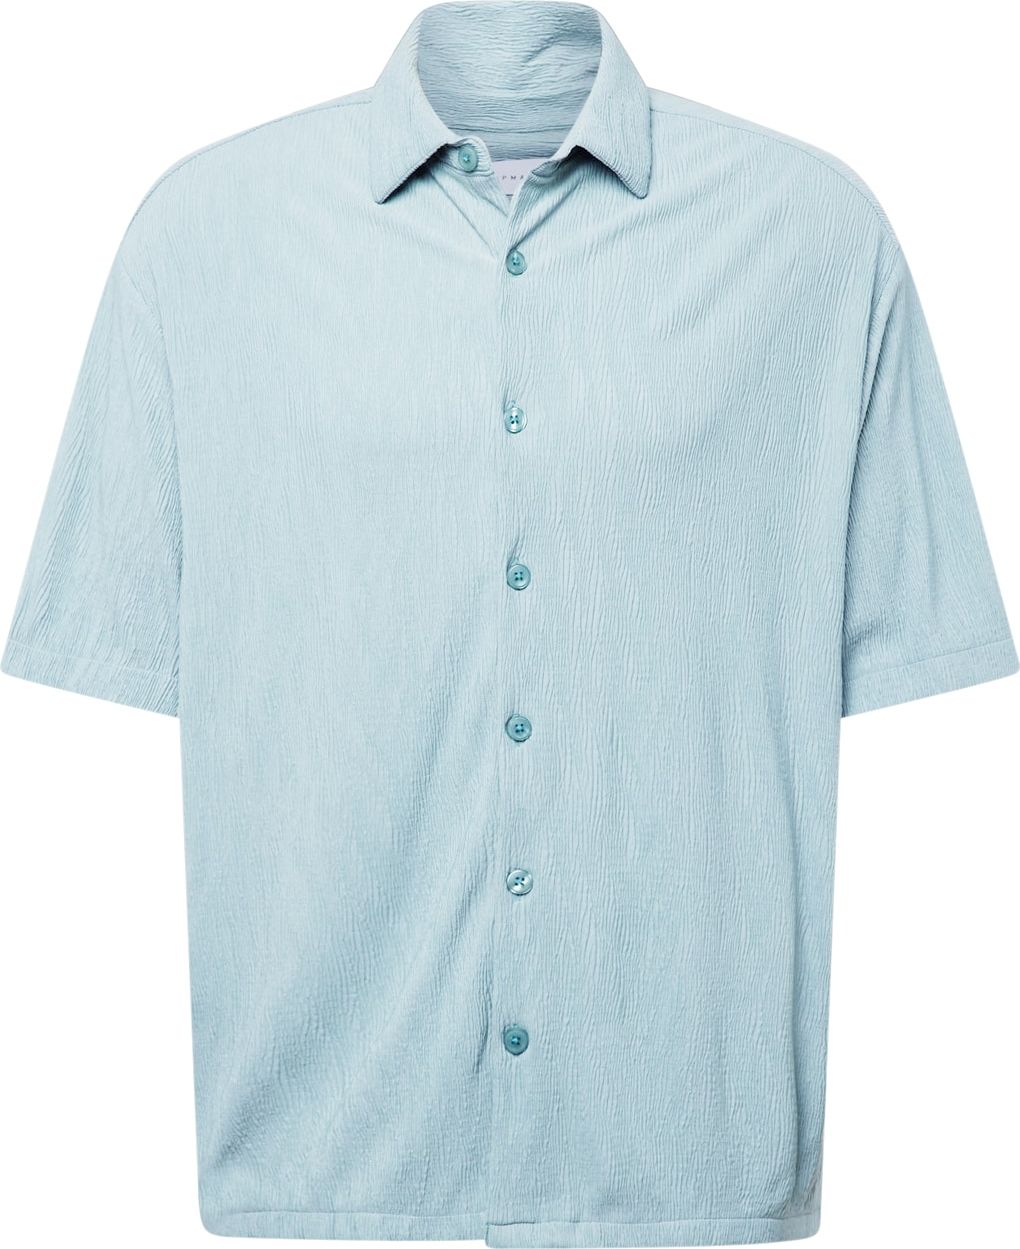 Košile Topman pastelová modrá